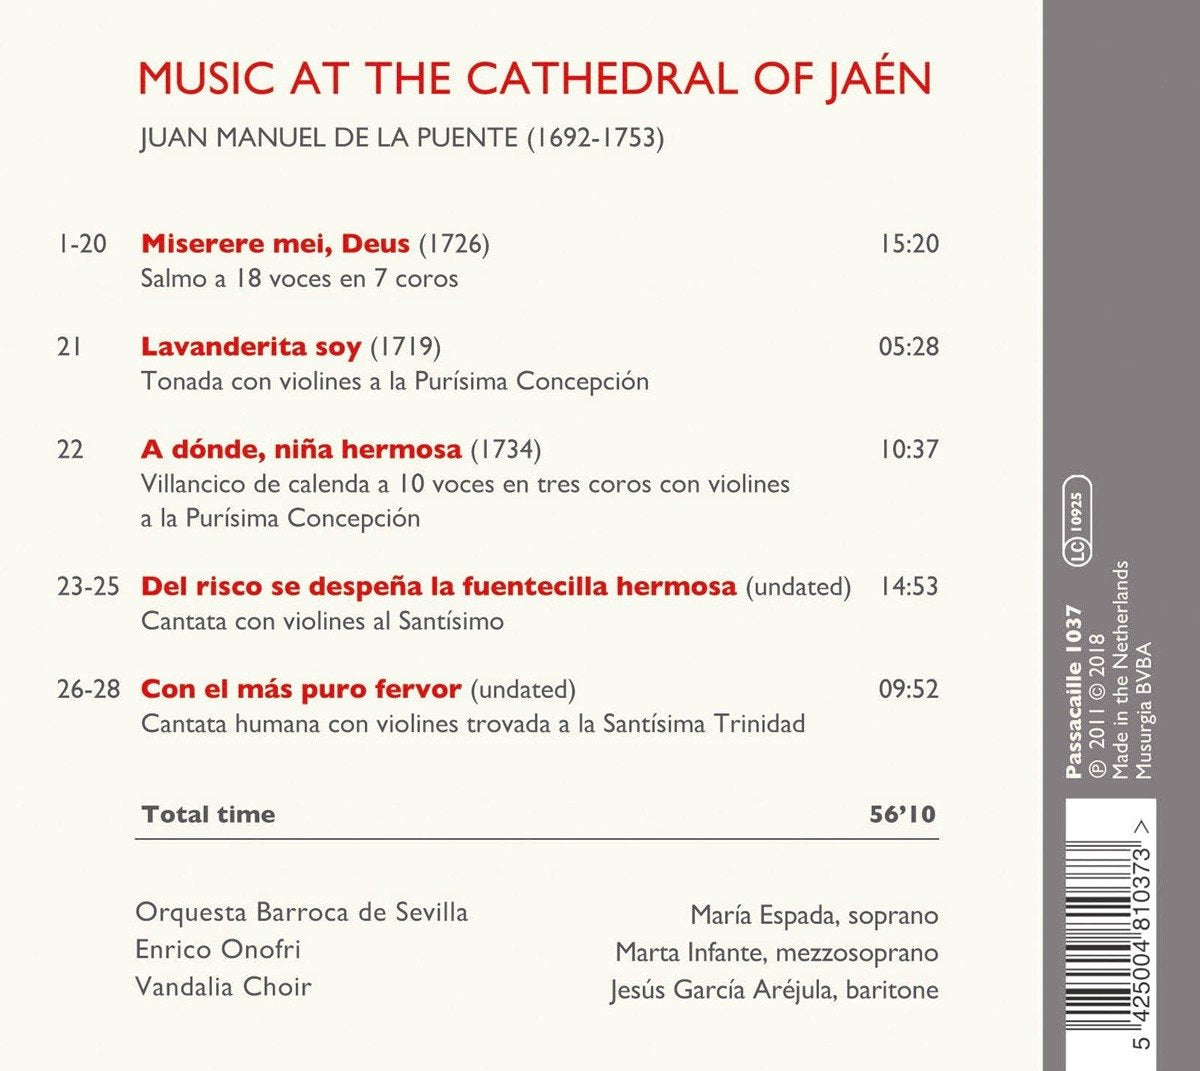 DE LA PUENTE: Music at the Cathedral of Jaen - Orquesta barroca de Sevilla